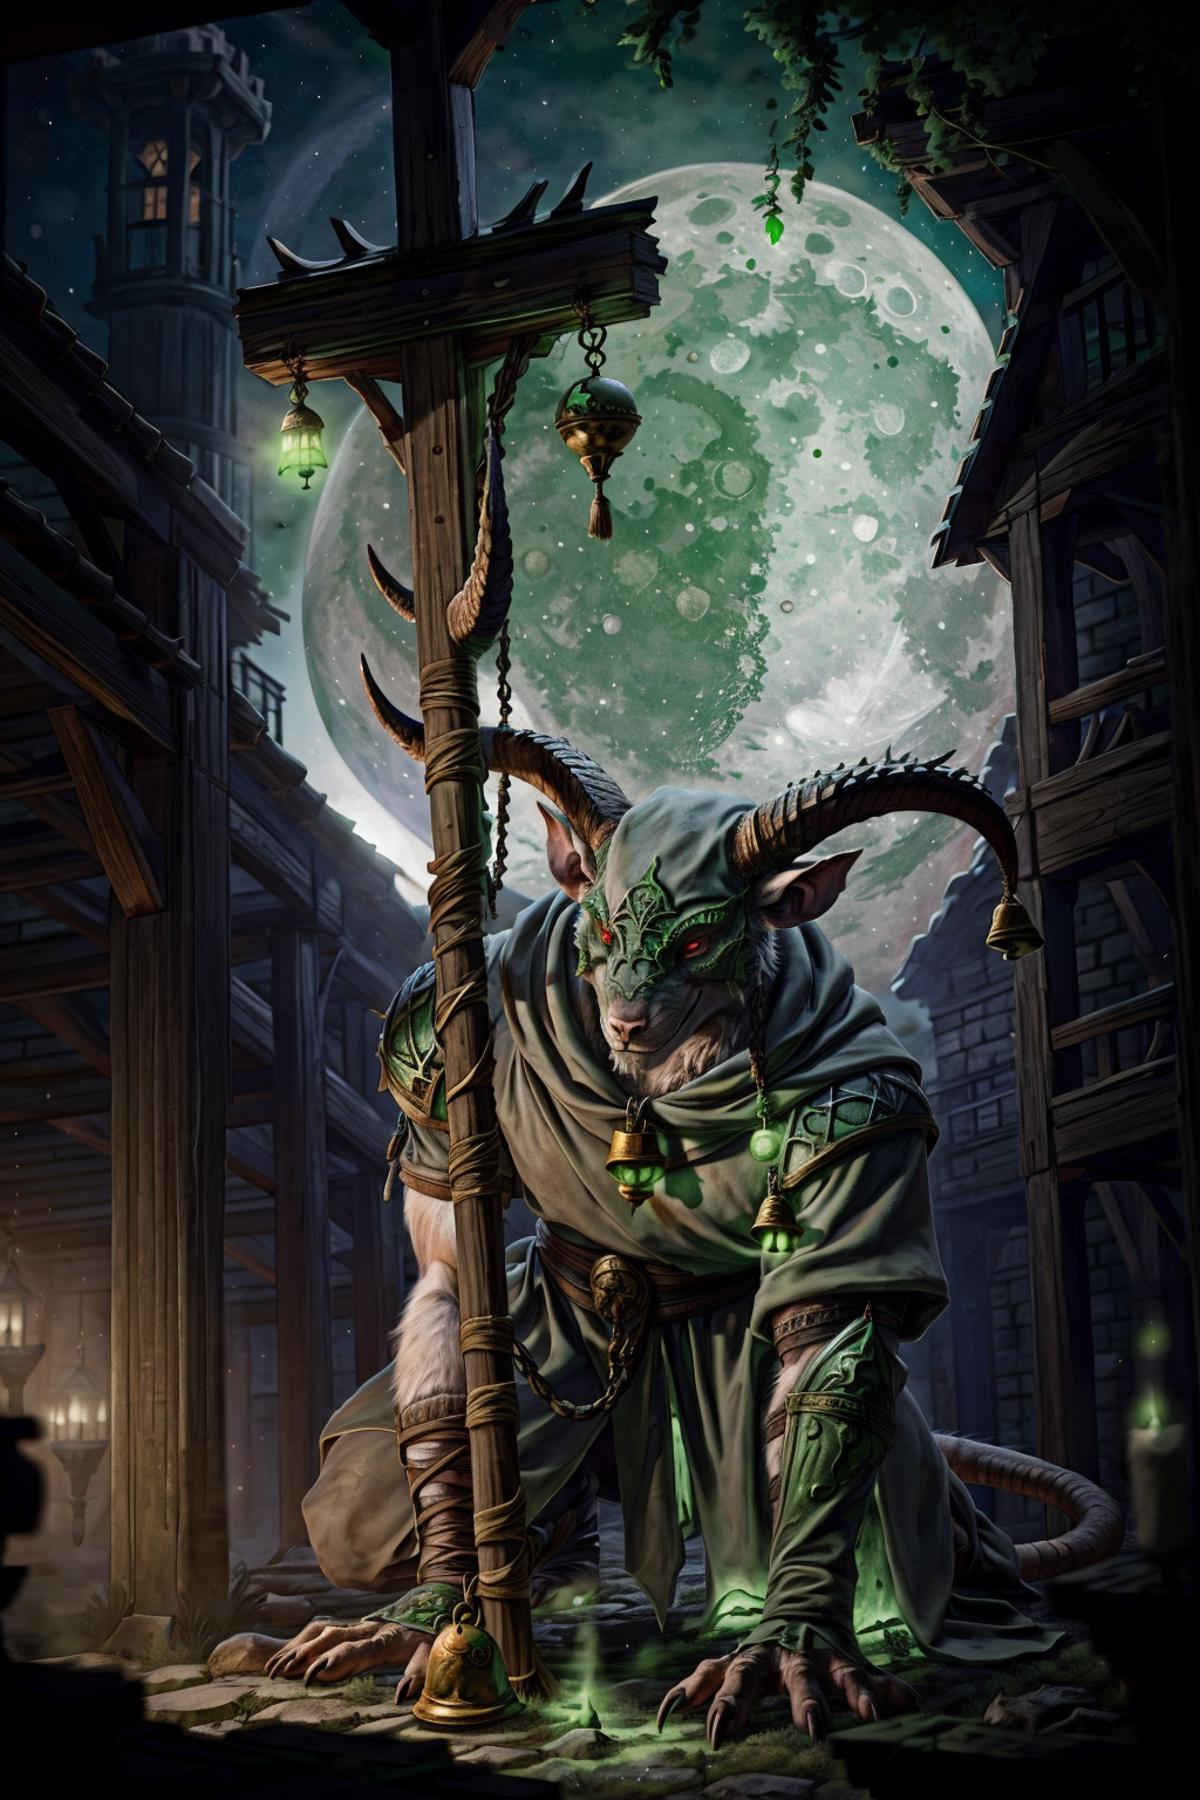 Skaven (Warhammer) image by Calt